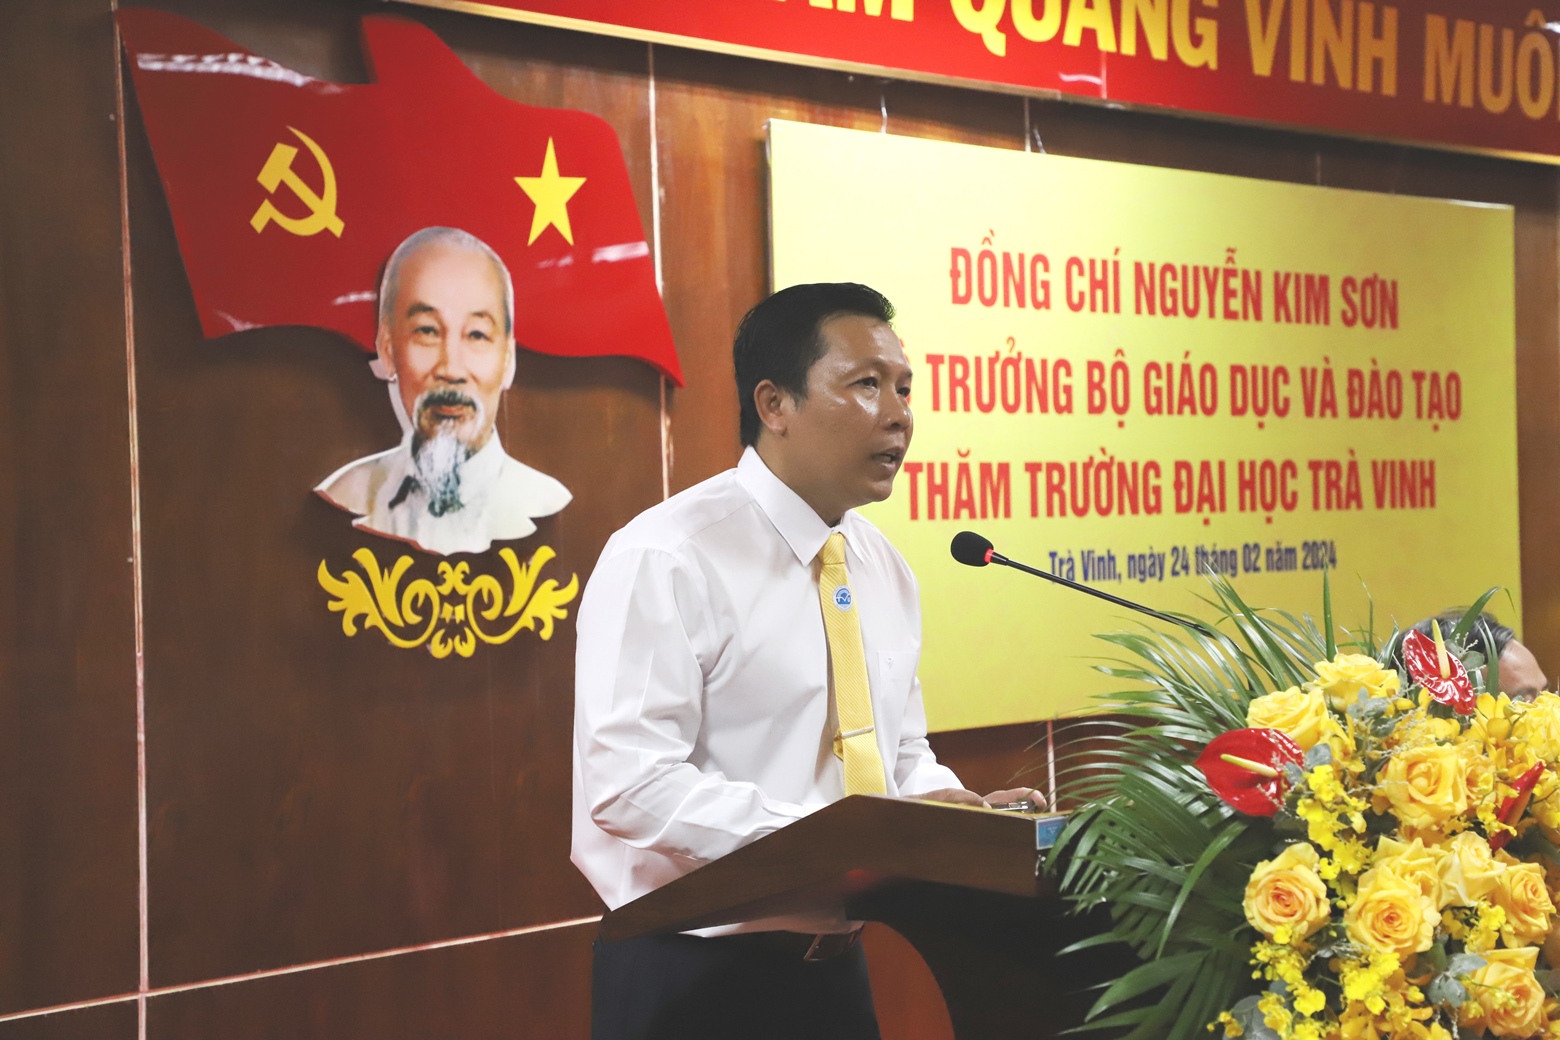 PGS.TS Nguyễn Minh Hòa - Hiệu trưởng Trường ĐH Trà Vinh phát biểu tại buổi làm việc.